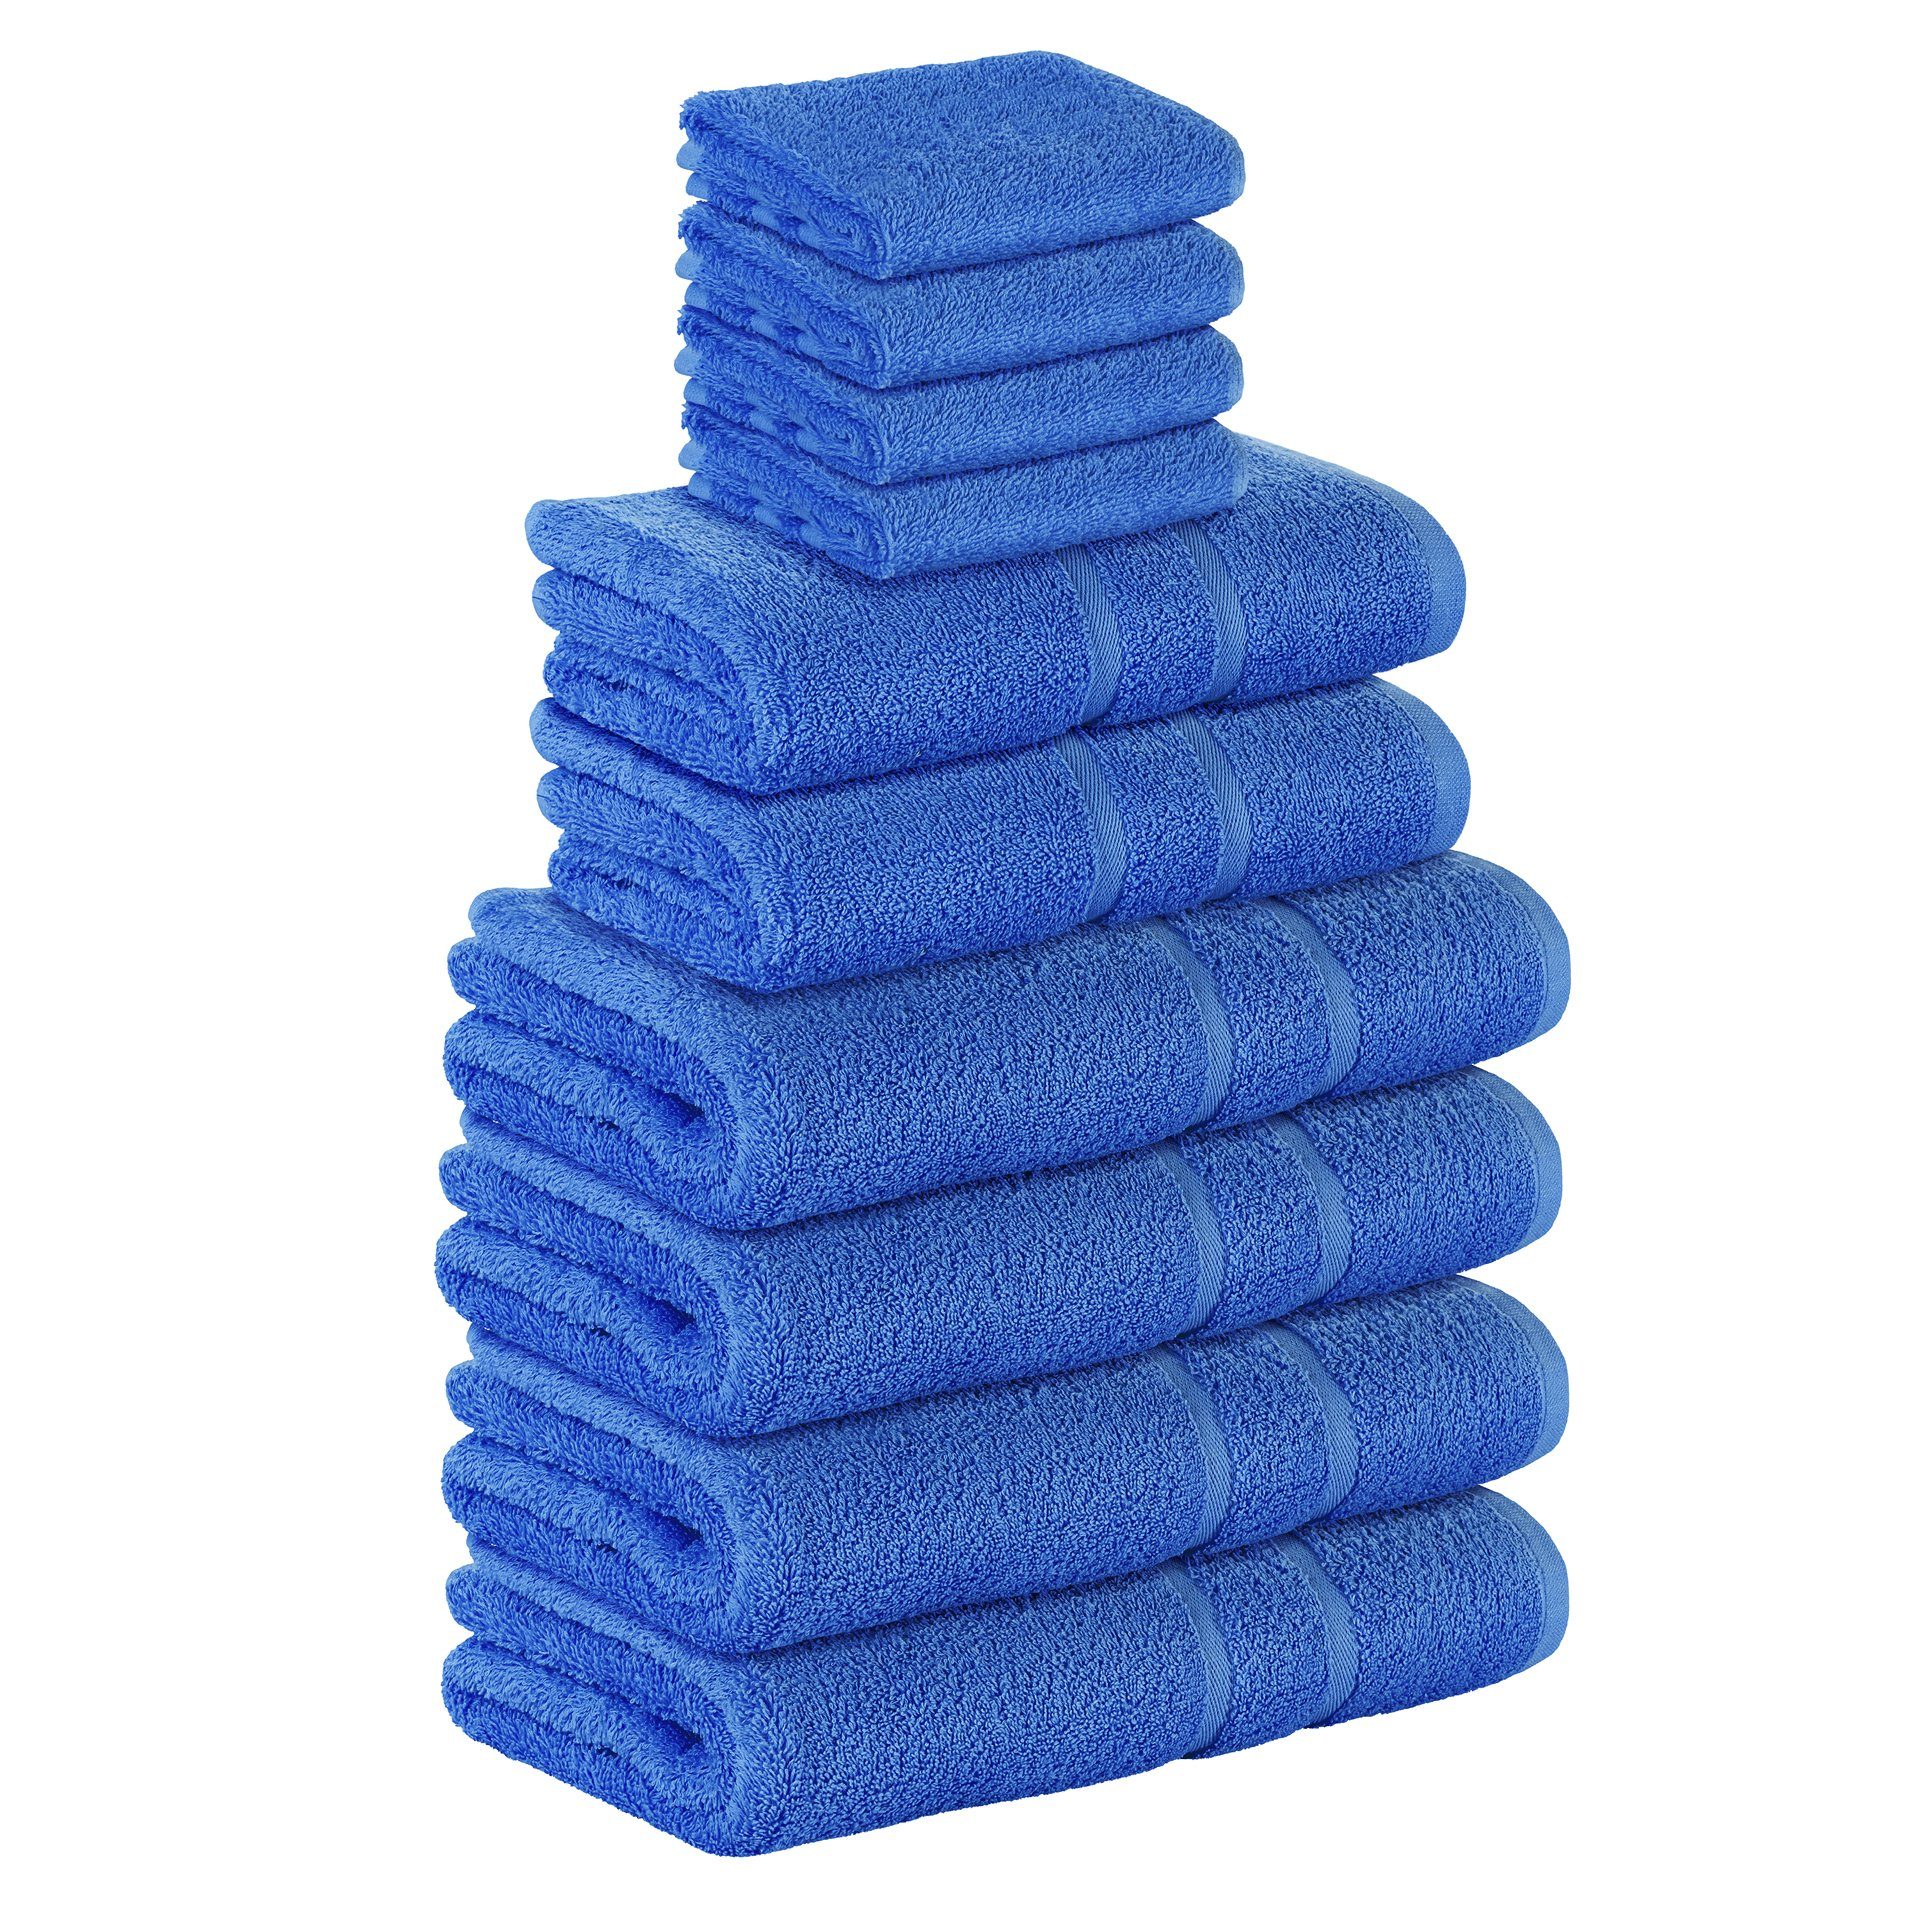 StickandShine Handtuch Set 4x Gästehandtuch 2x Handtücher 4x Duschtücher als SET in verschiedenen Farben (10 Teilig) 100% Baumwolle 500 GSM Frottee 10er Handtuch Pack, 100% Baumwolle 500 GSM Blau